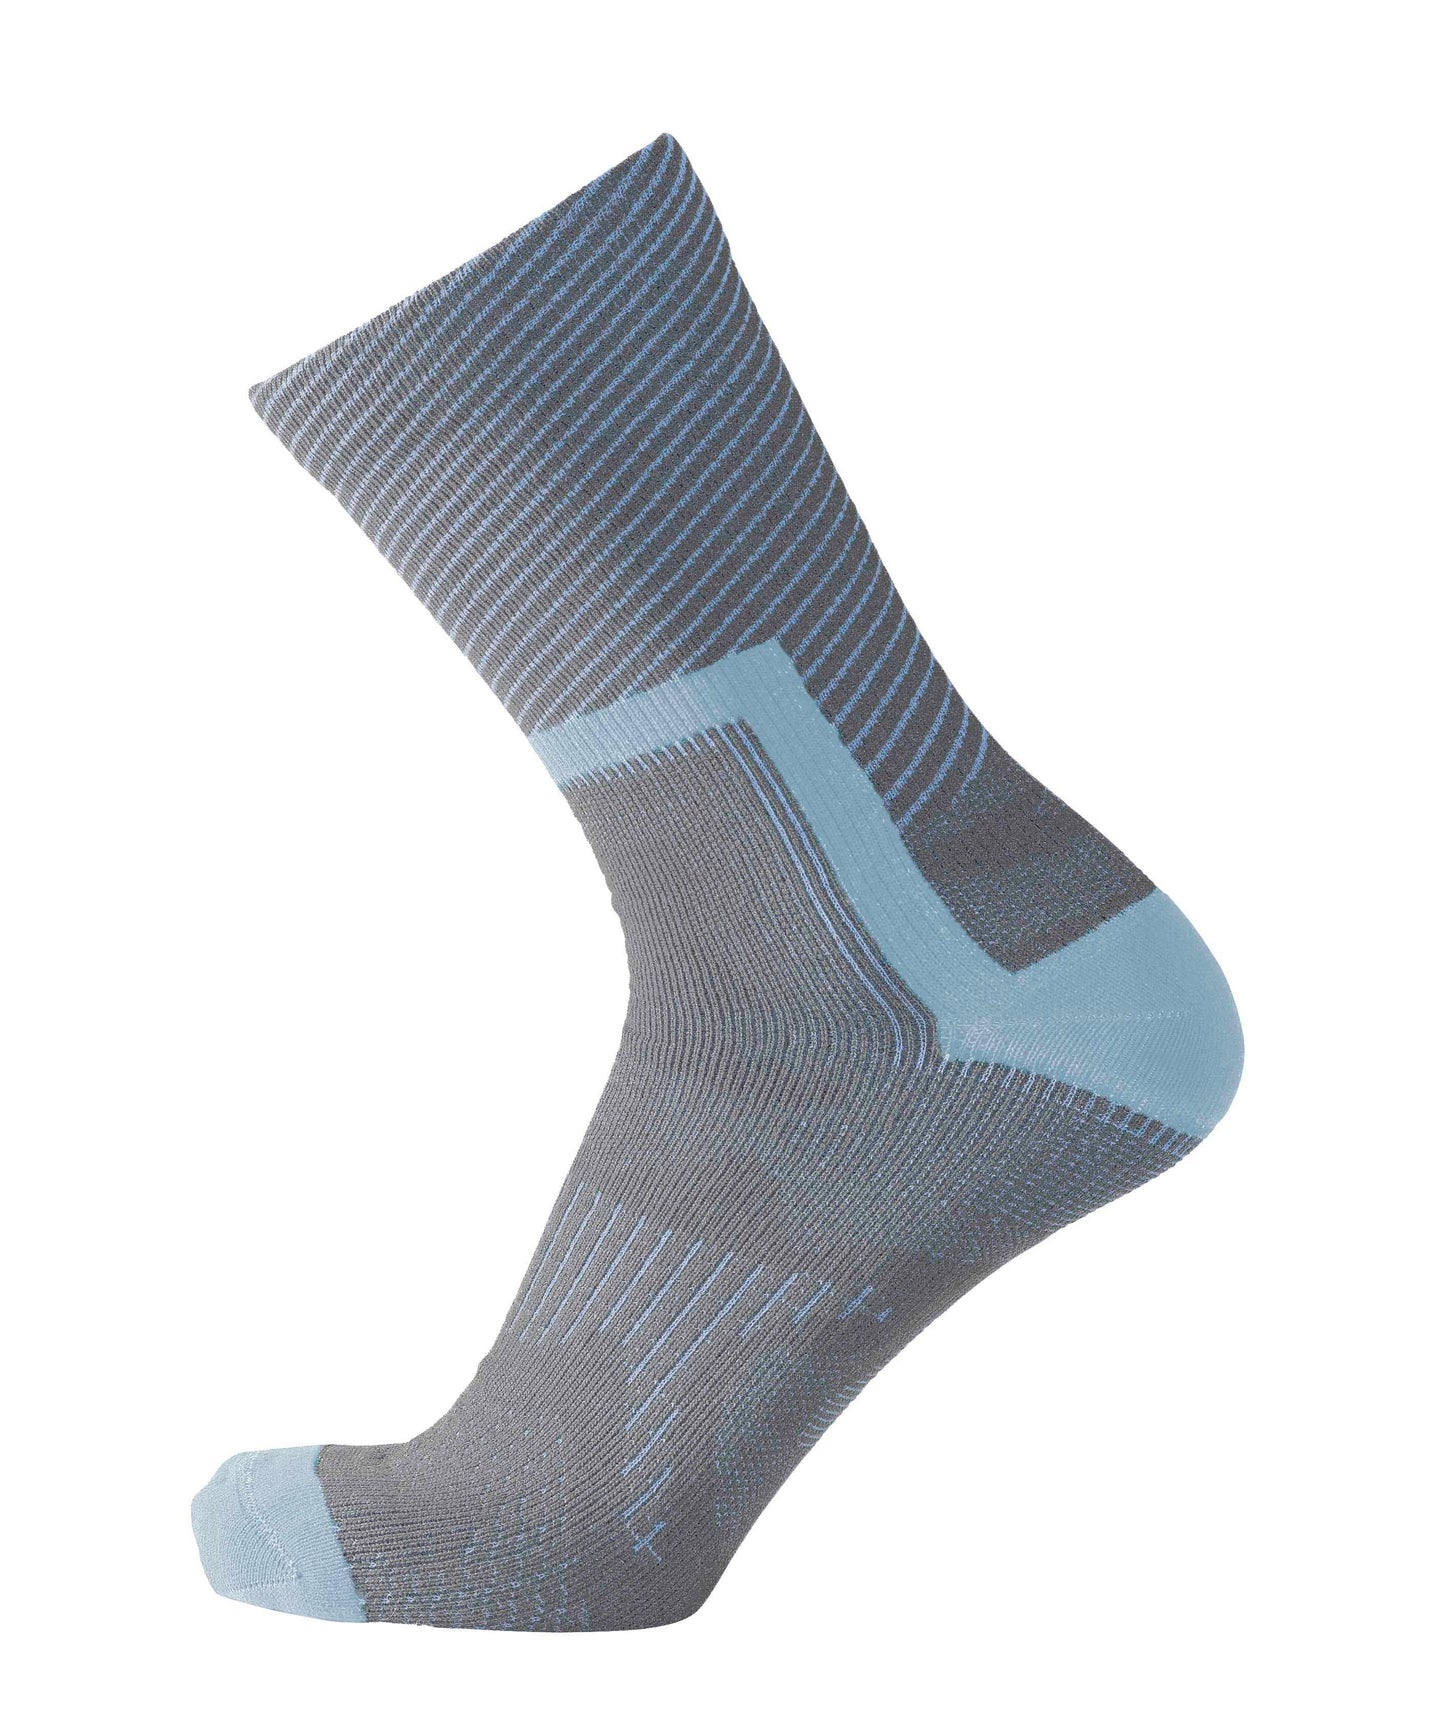 Crosspoint Ultra-Light Waterproof Socks - Wool Blend